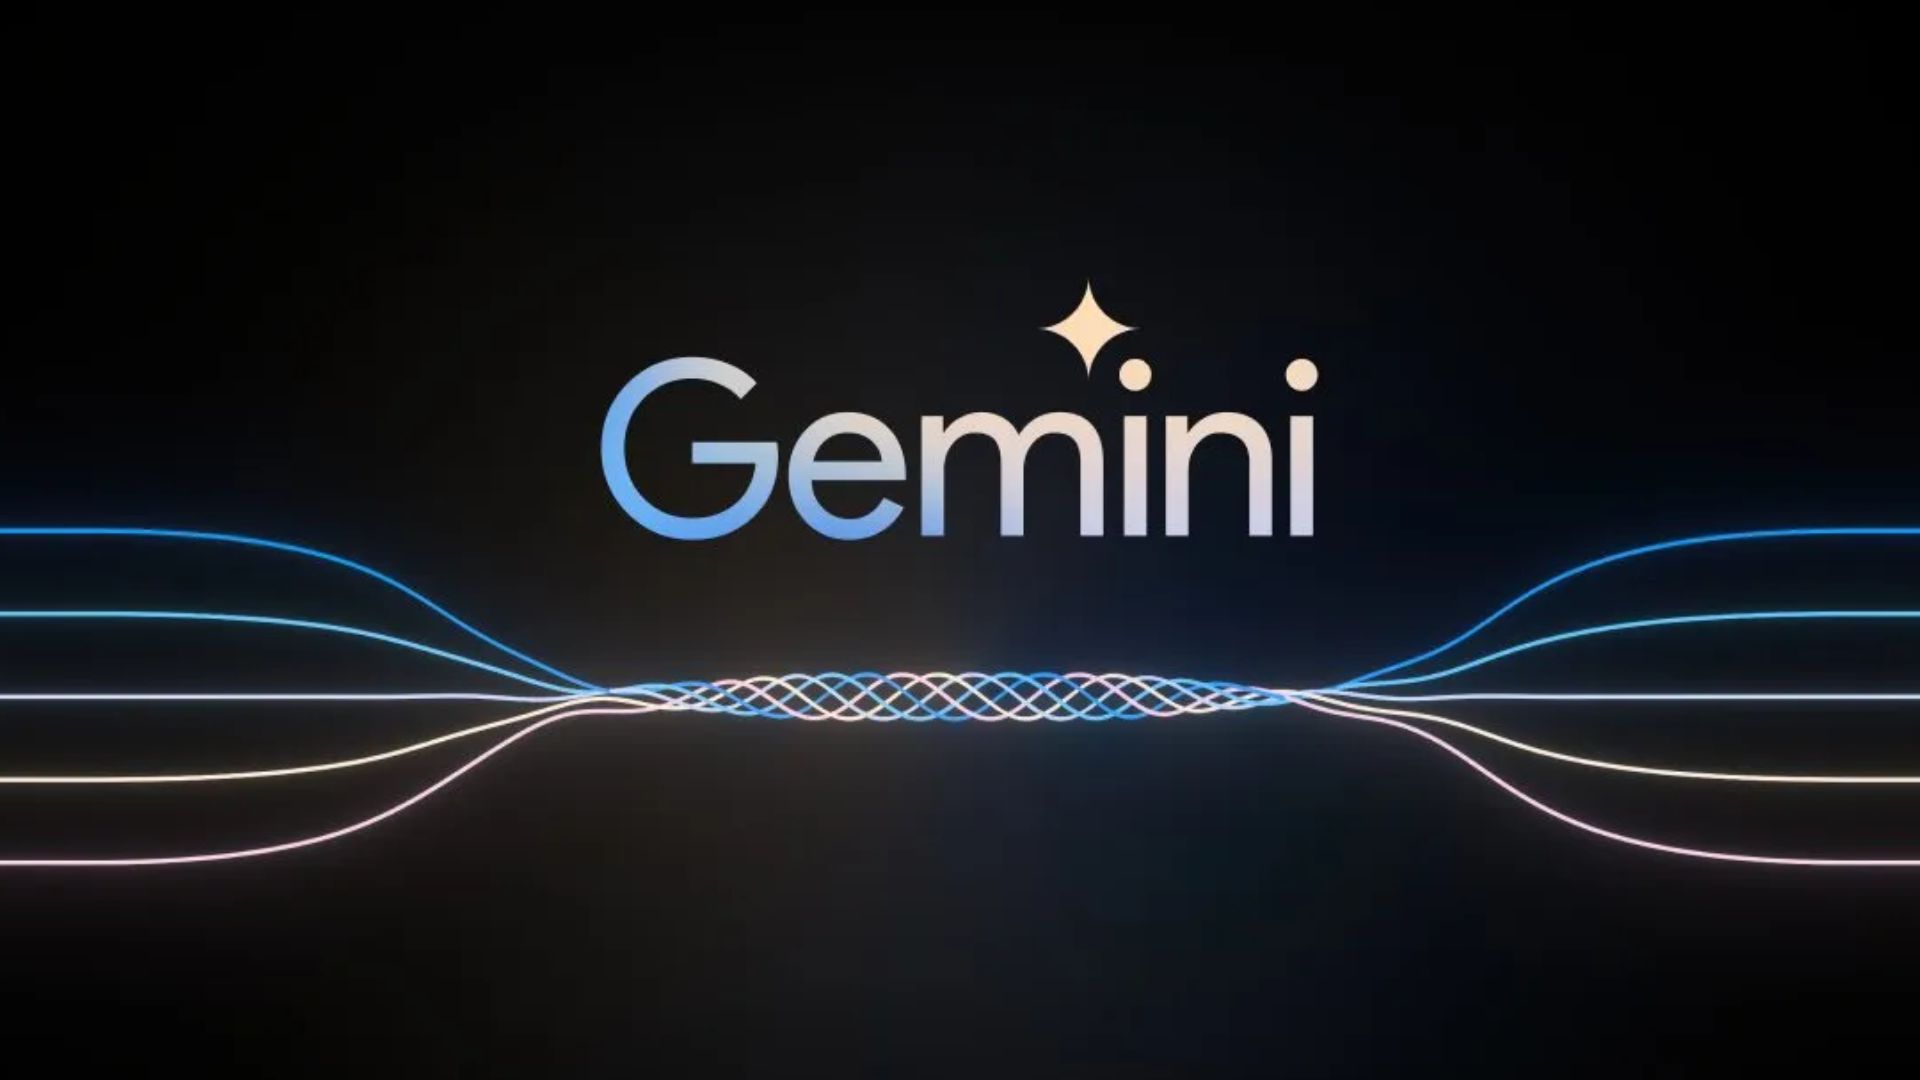 Contarctica- Google Gemini AI